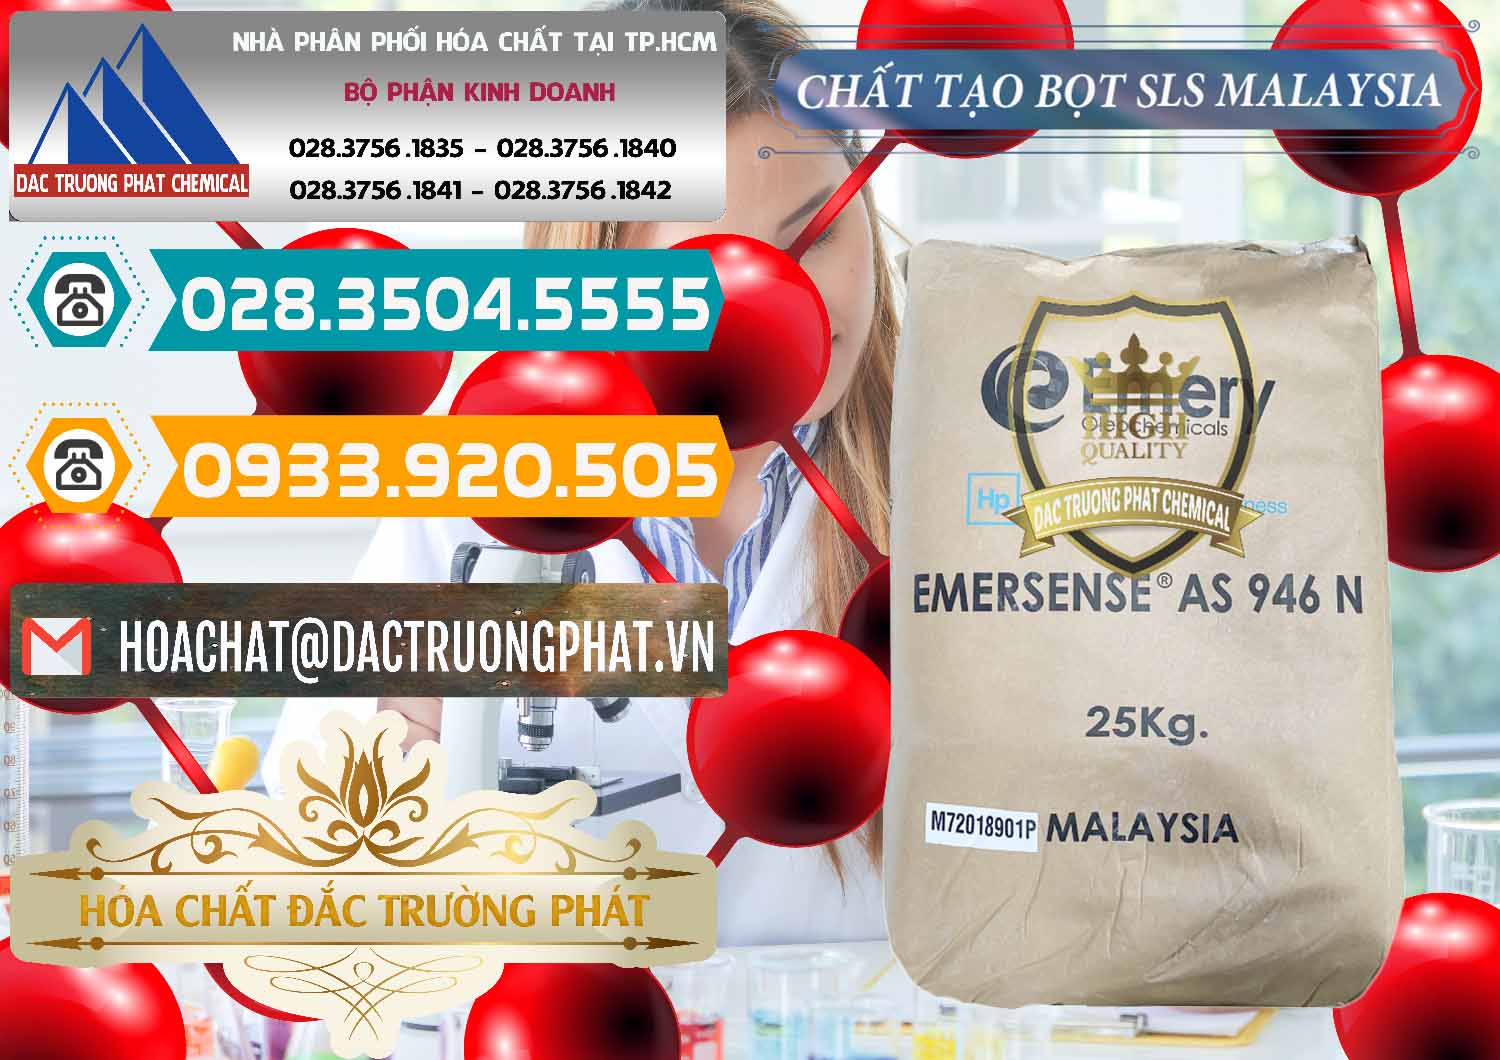 Chuyên cung ứng _ bán Chất Tạo Bọt SLS Emery - Emersense AS 946N Mã Lai Malaysia - 0423 - Chuyên cung cấp & nhập khẩu hóa chất tại TP.HCM - congtyhoachat.vn